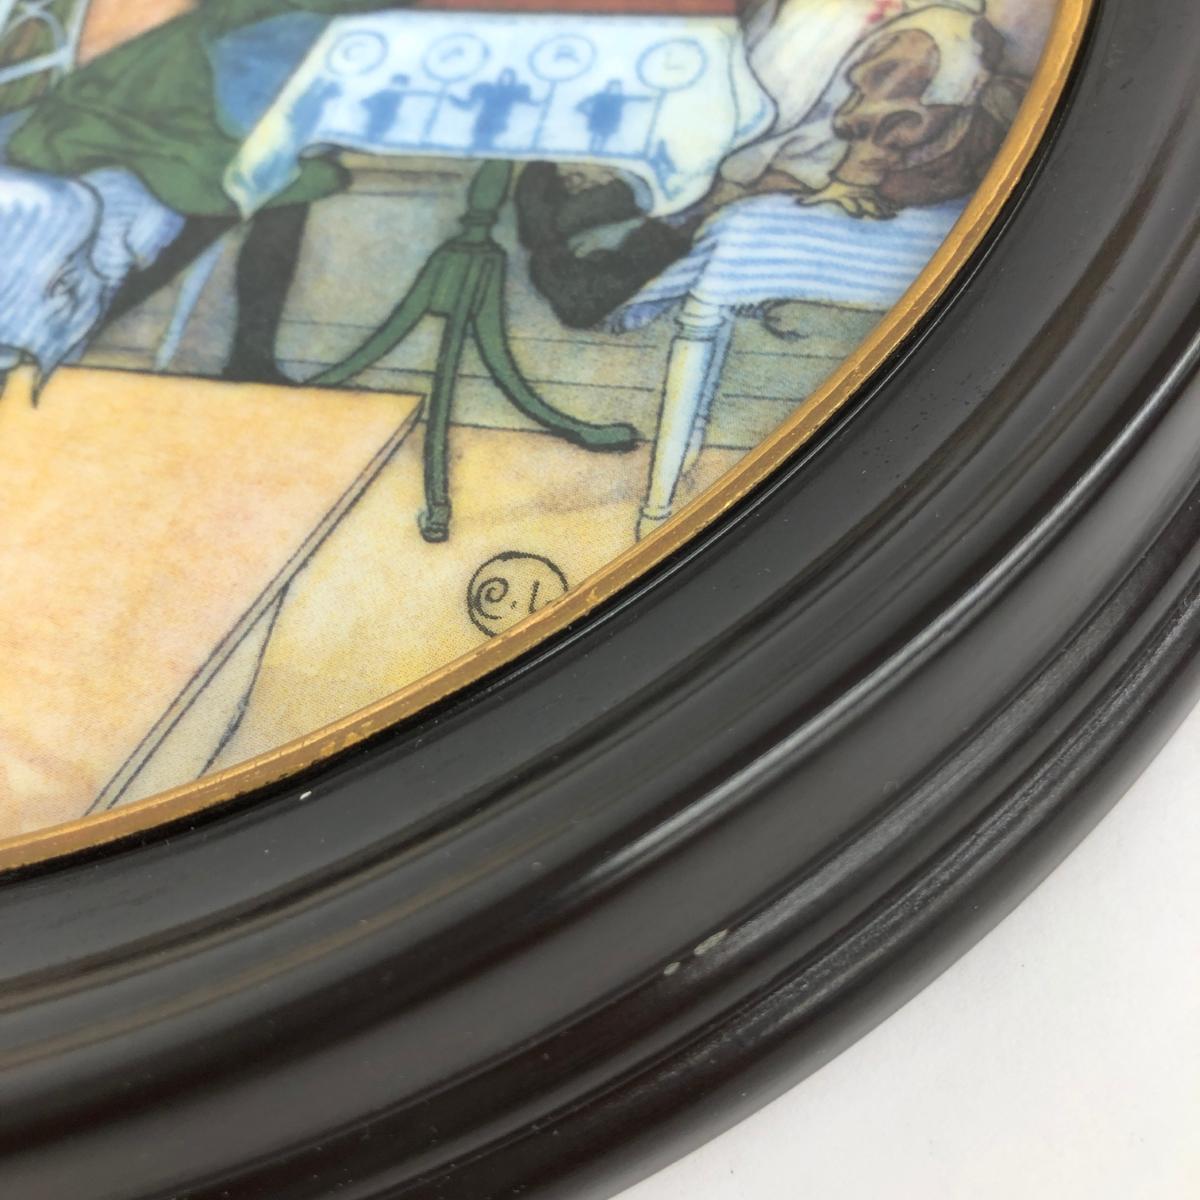 ◆ROYAL COPENHAGEN ロイヤルコペンハーゲン カール・ラーション 陶板画 飾り皿 絵皿 26cm ◆ マルチカラー インテリア interior_画像6